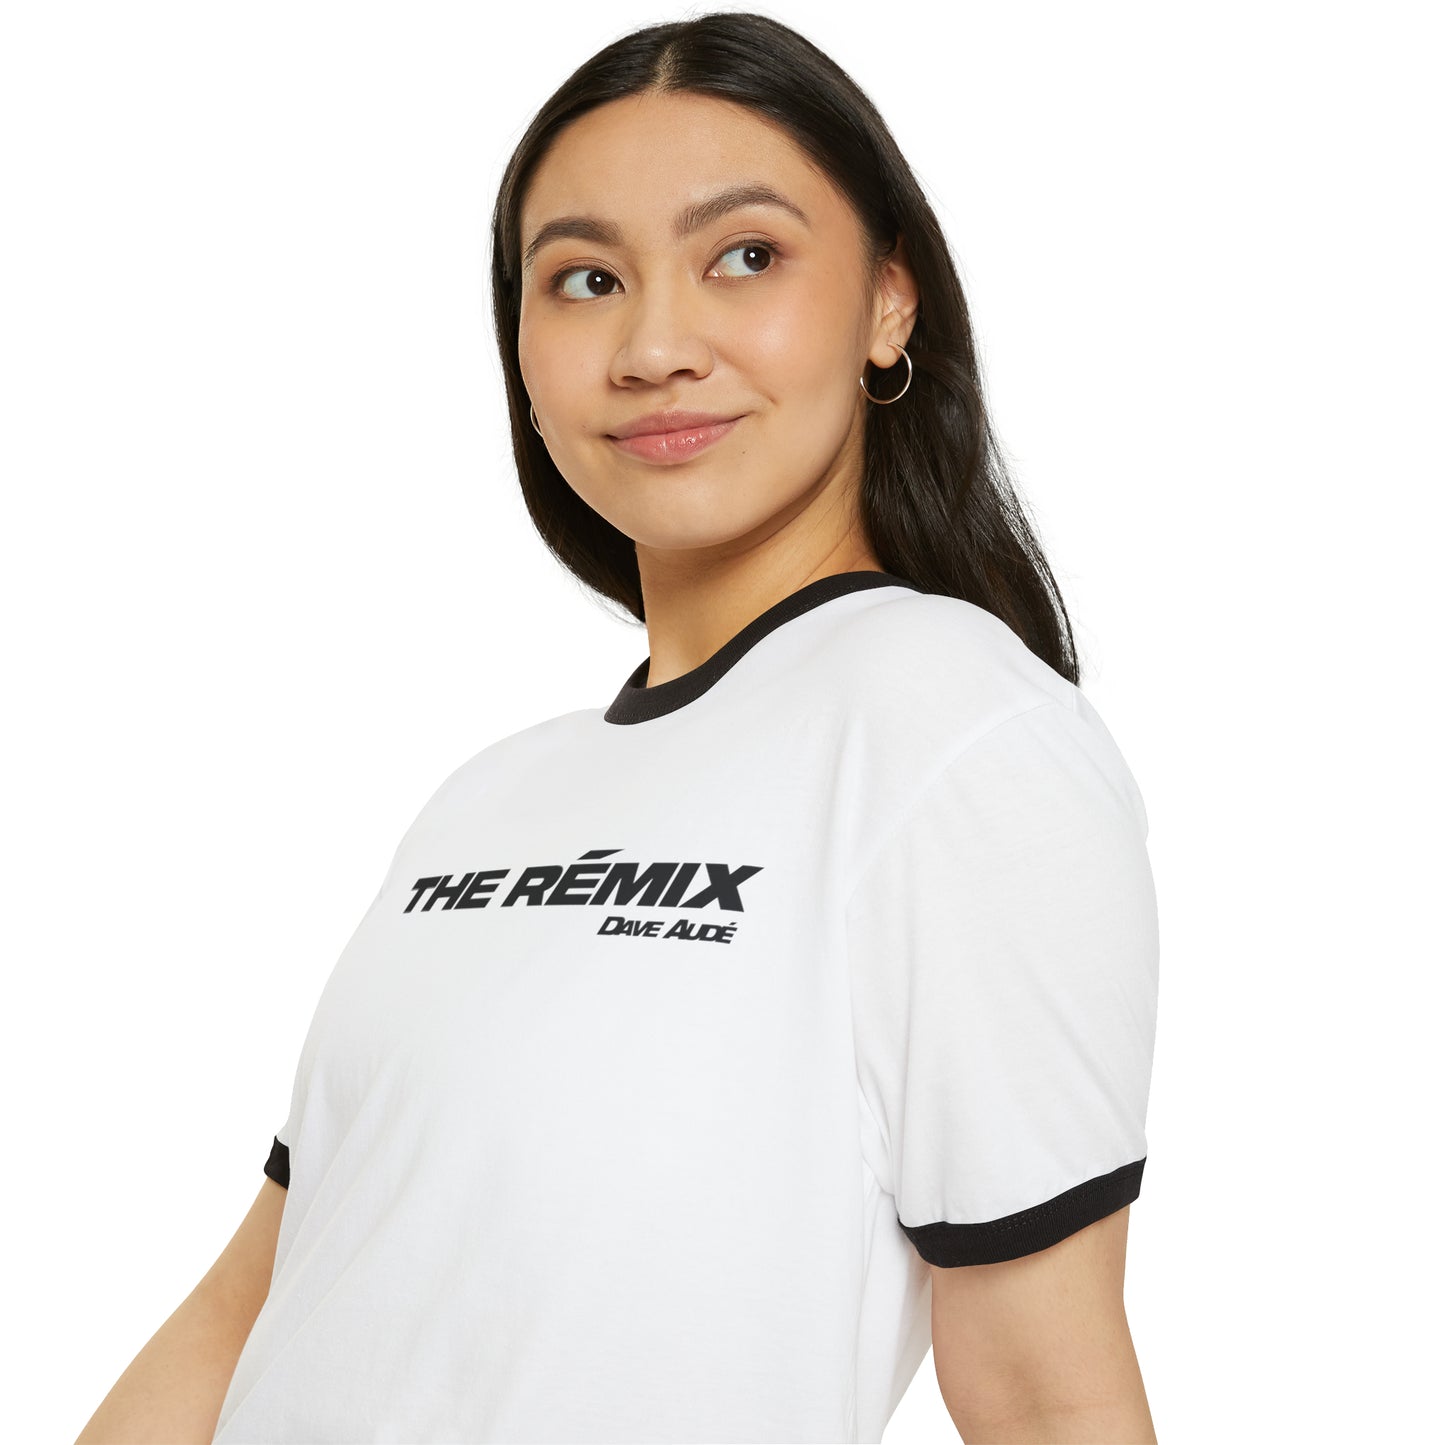 THE RÉMIX by Dave Audé (Black on White) Unisex Cotton Ringer T-Shirt